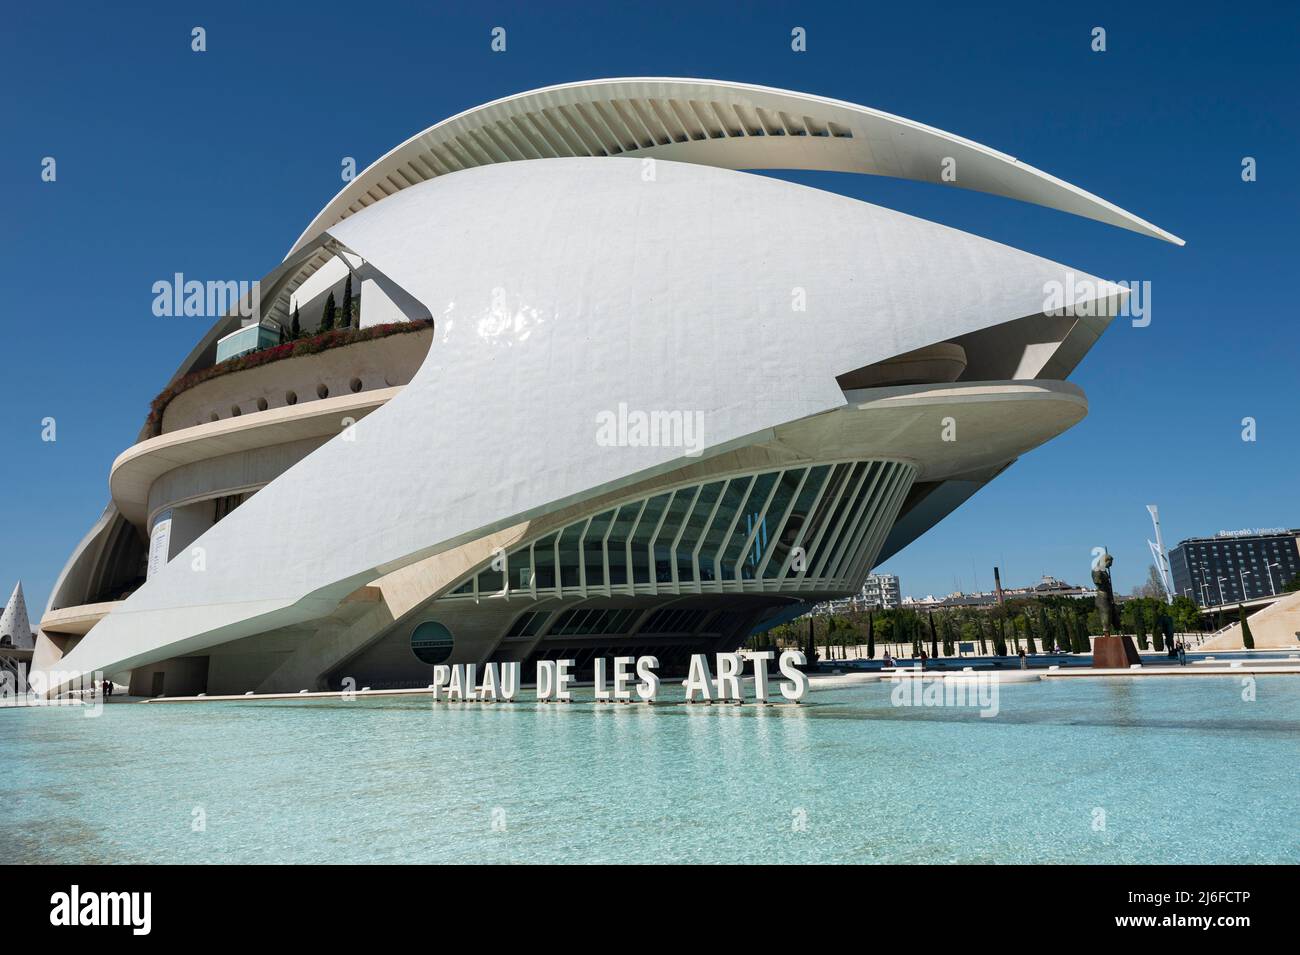 Futuristische Architektur: Opernhaus und Kulturzentrum in Valencia, Spanien. Palau de les Arts Reina Sofia Stockfoto